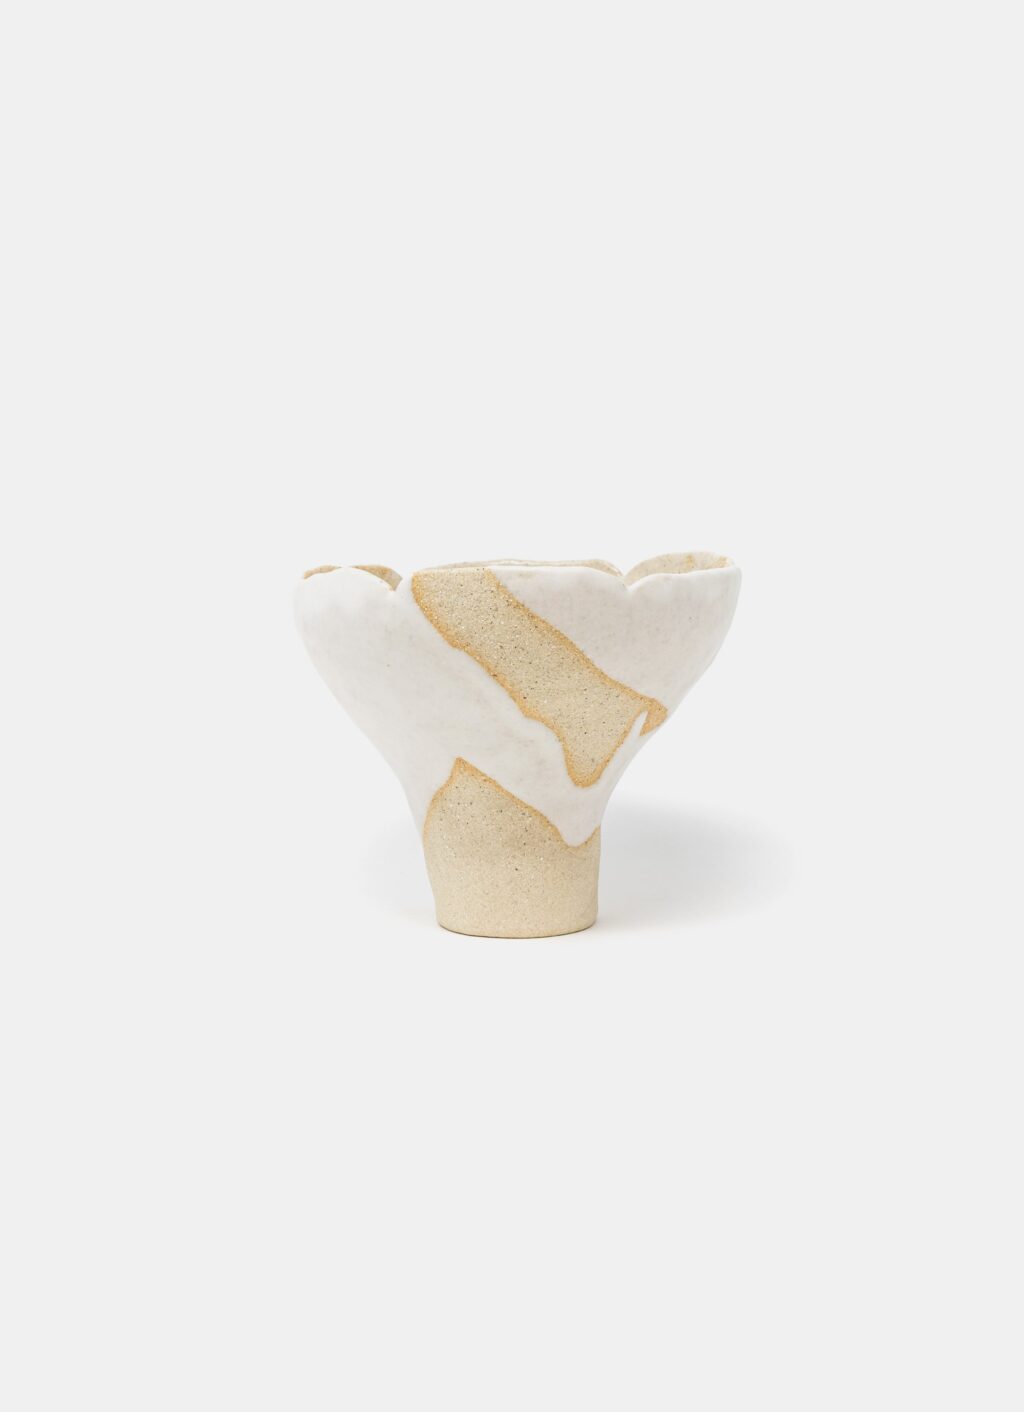 Mano Mani - Ikebana Vase - Light Stoneware and white glaze - 4